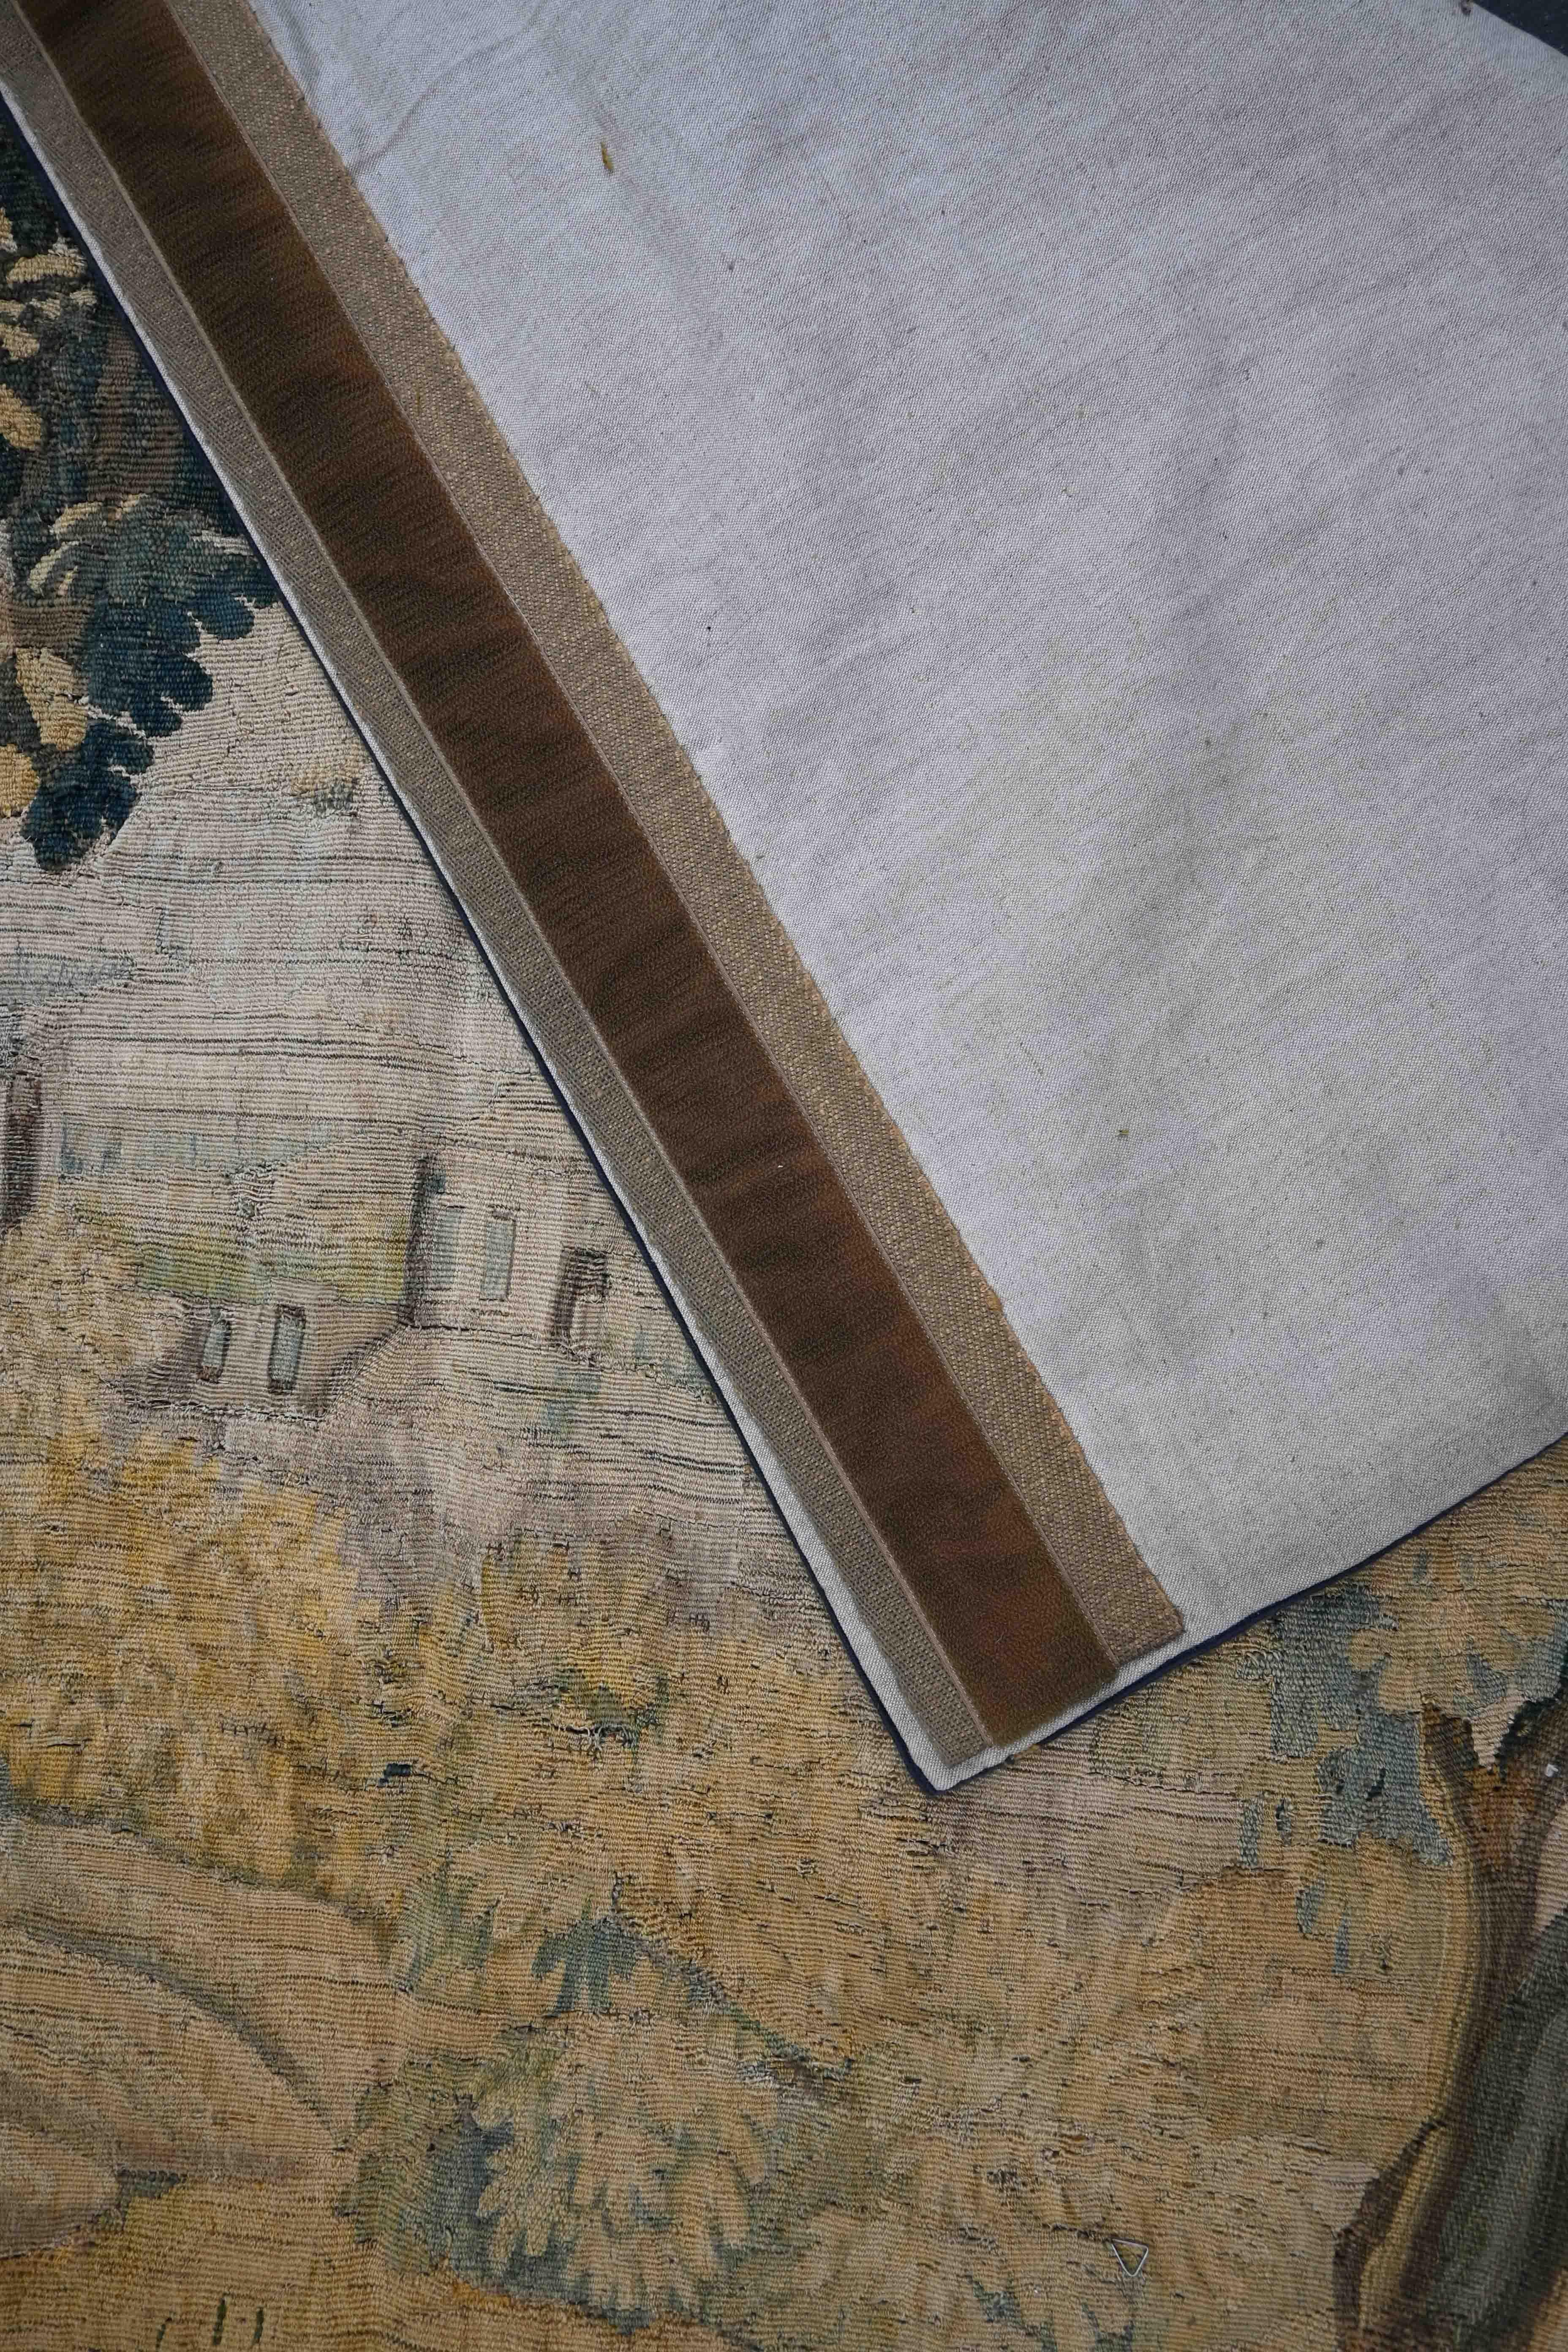 Tapisserie d'Aubusson du XVIIIe siècle SCENE GALANT avec très joli perssonnage- N° 1253

Grâce à notre atelier de restauration-conservation et aussi à notre savoir-faire, 
nous avons le plaisir de vous présenter des œuvres d'art en tissu telles